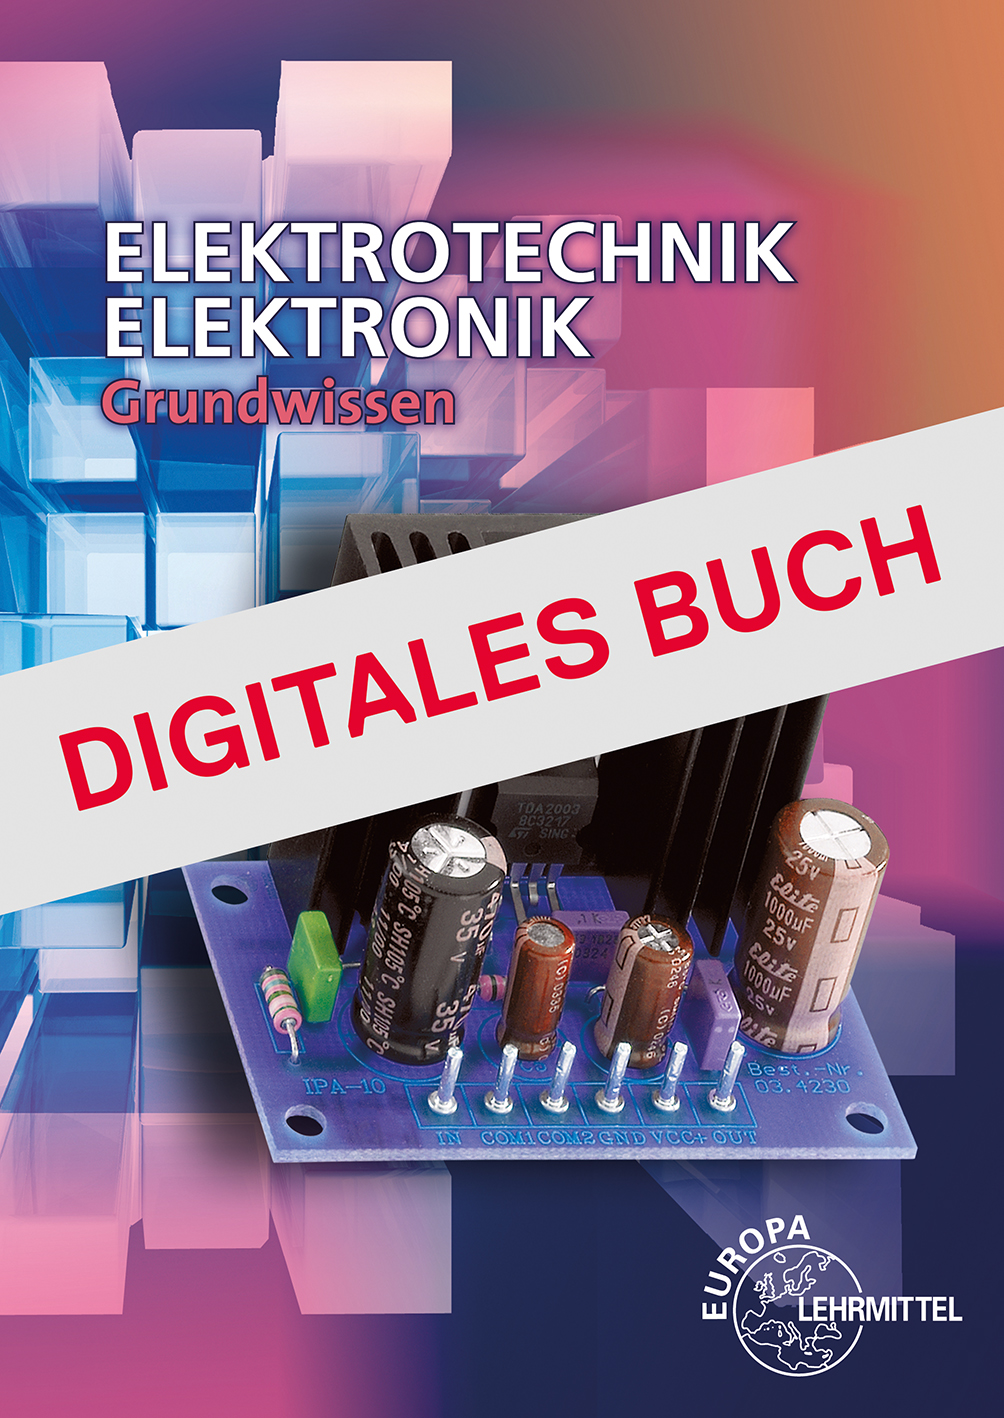 Elektrotechnik/Elektronik Grundwissen - Digitales Buch